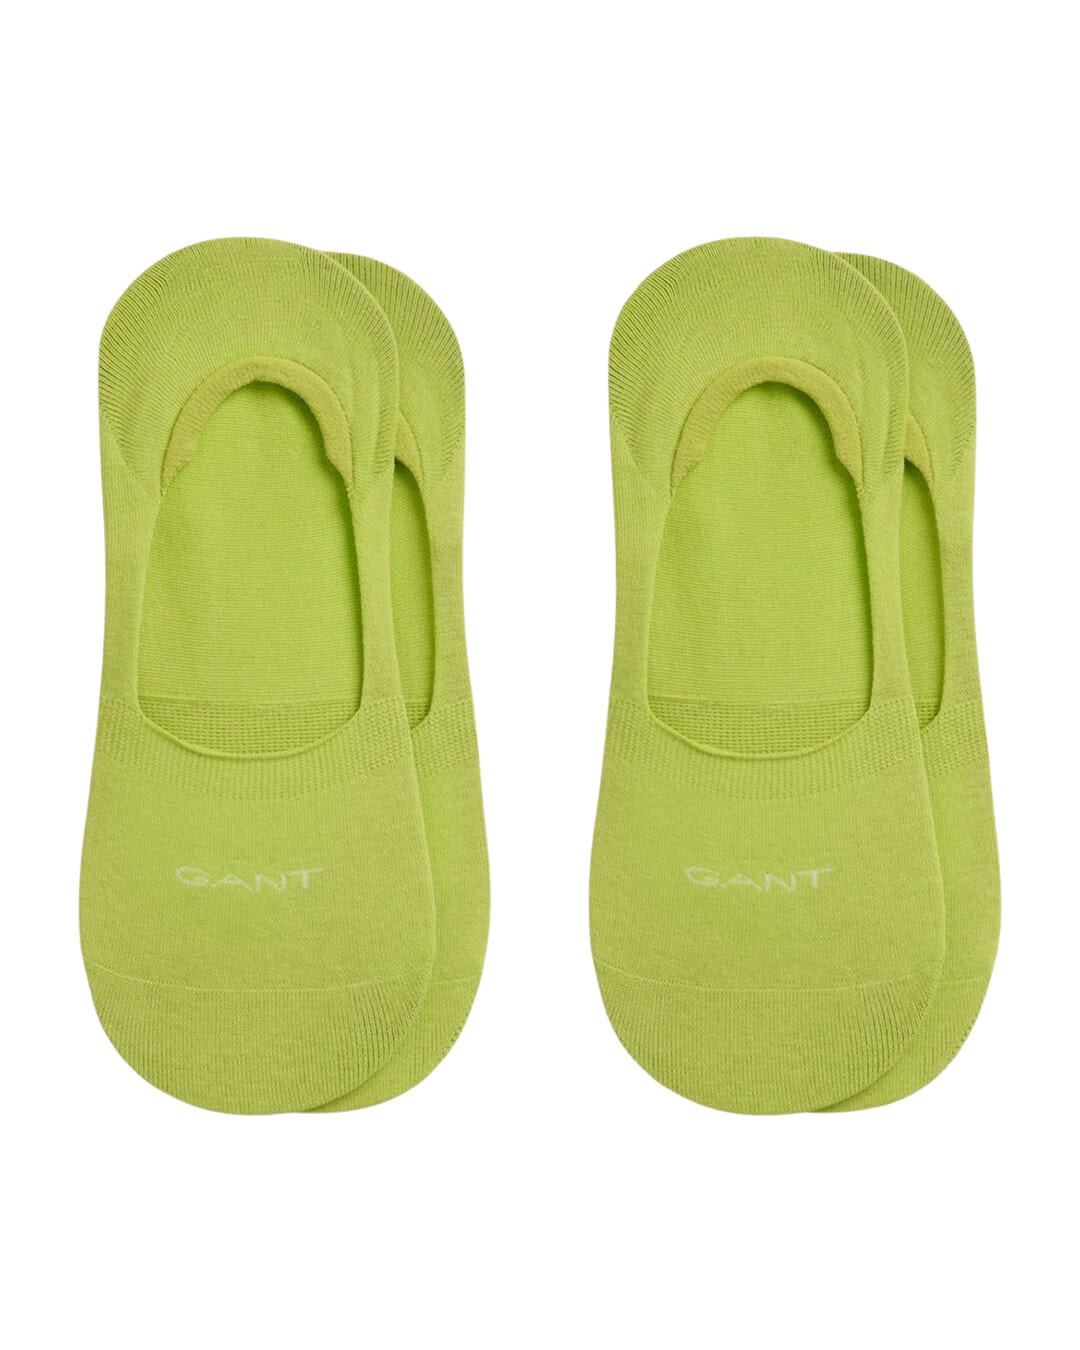 Gant Socks Gant Green 2-Pack Invisible Socks